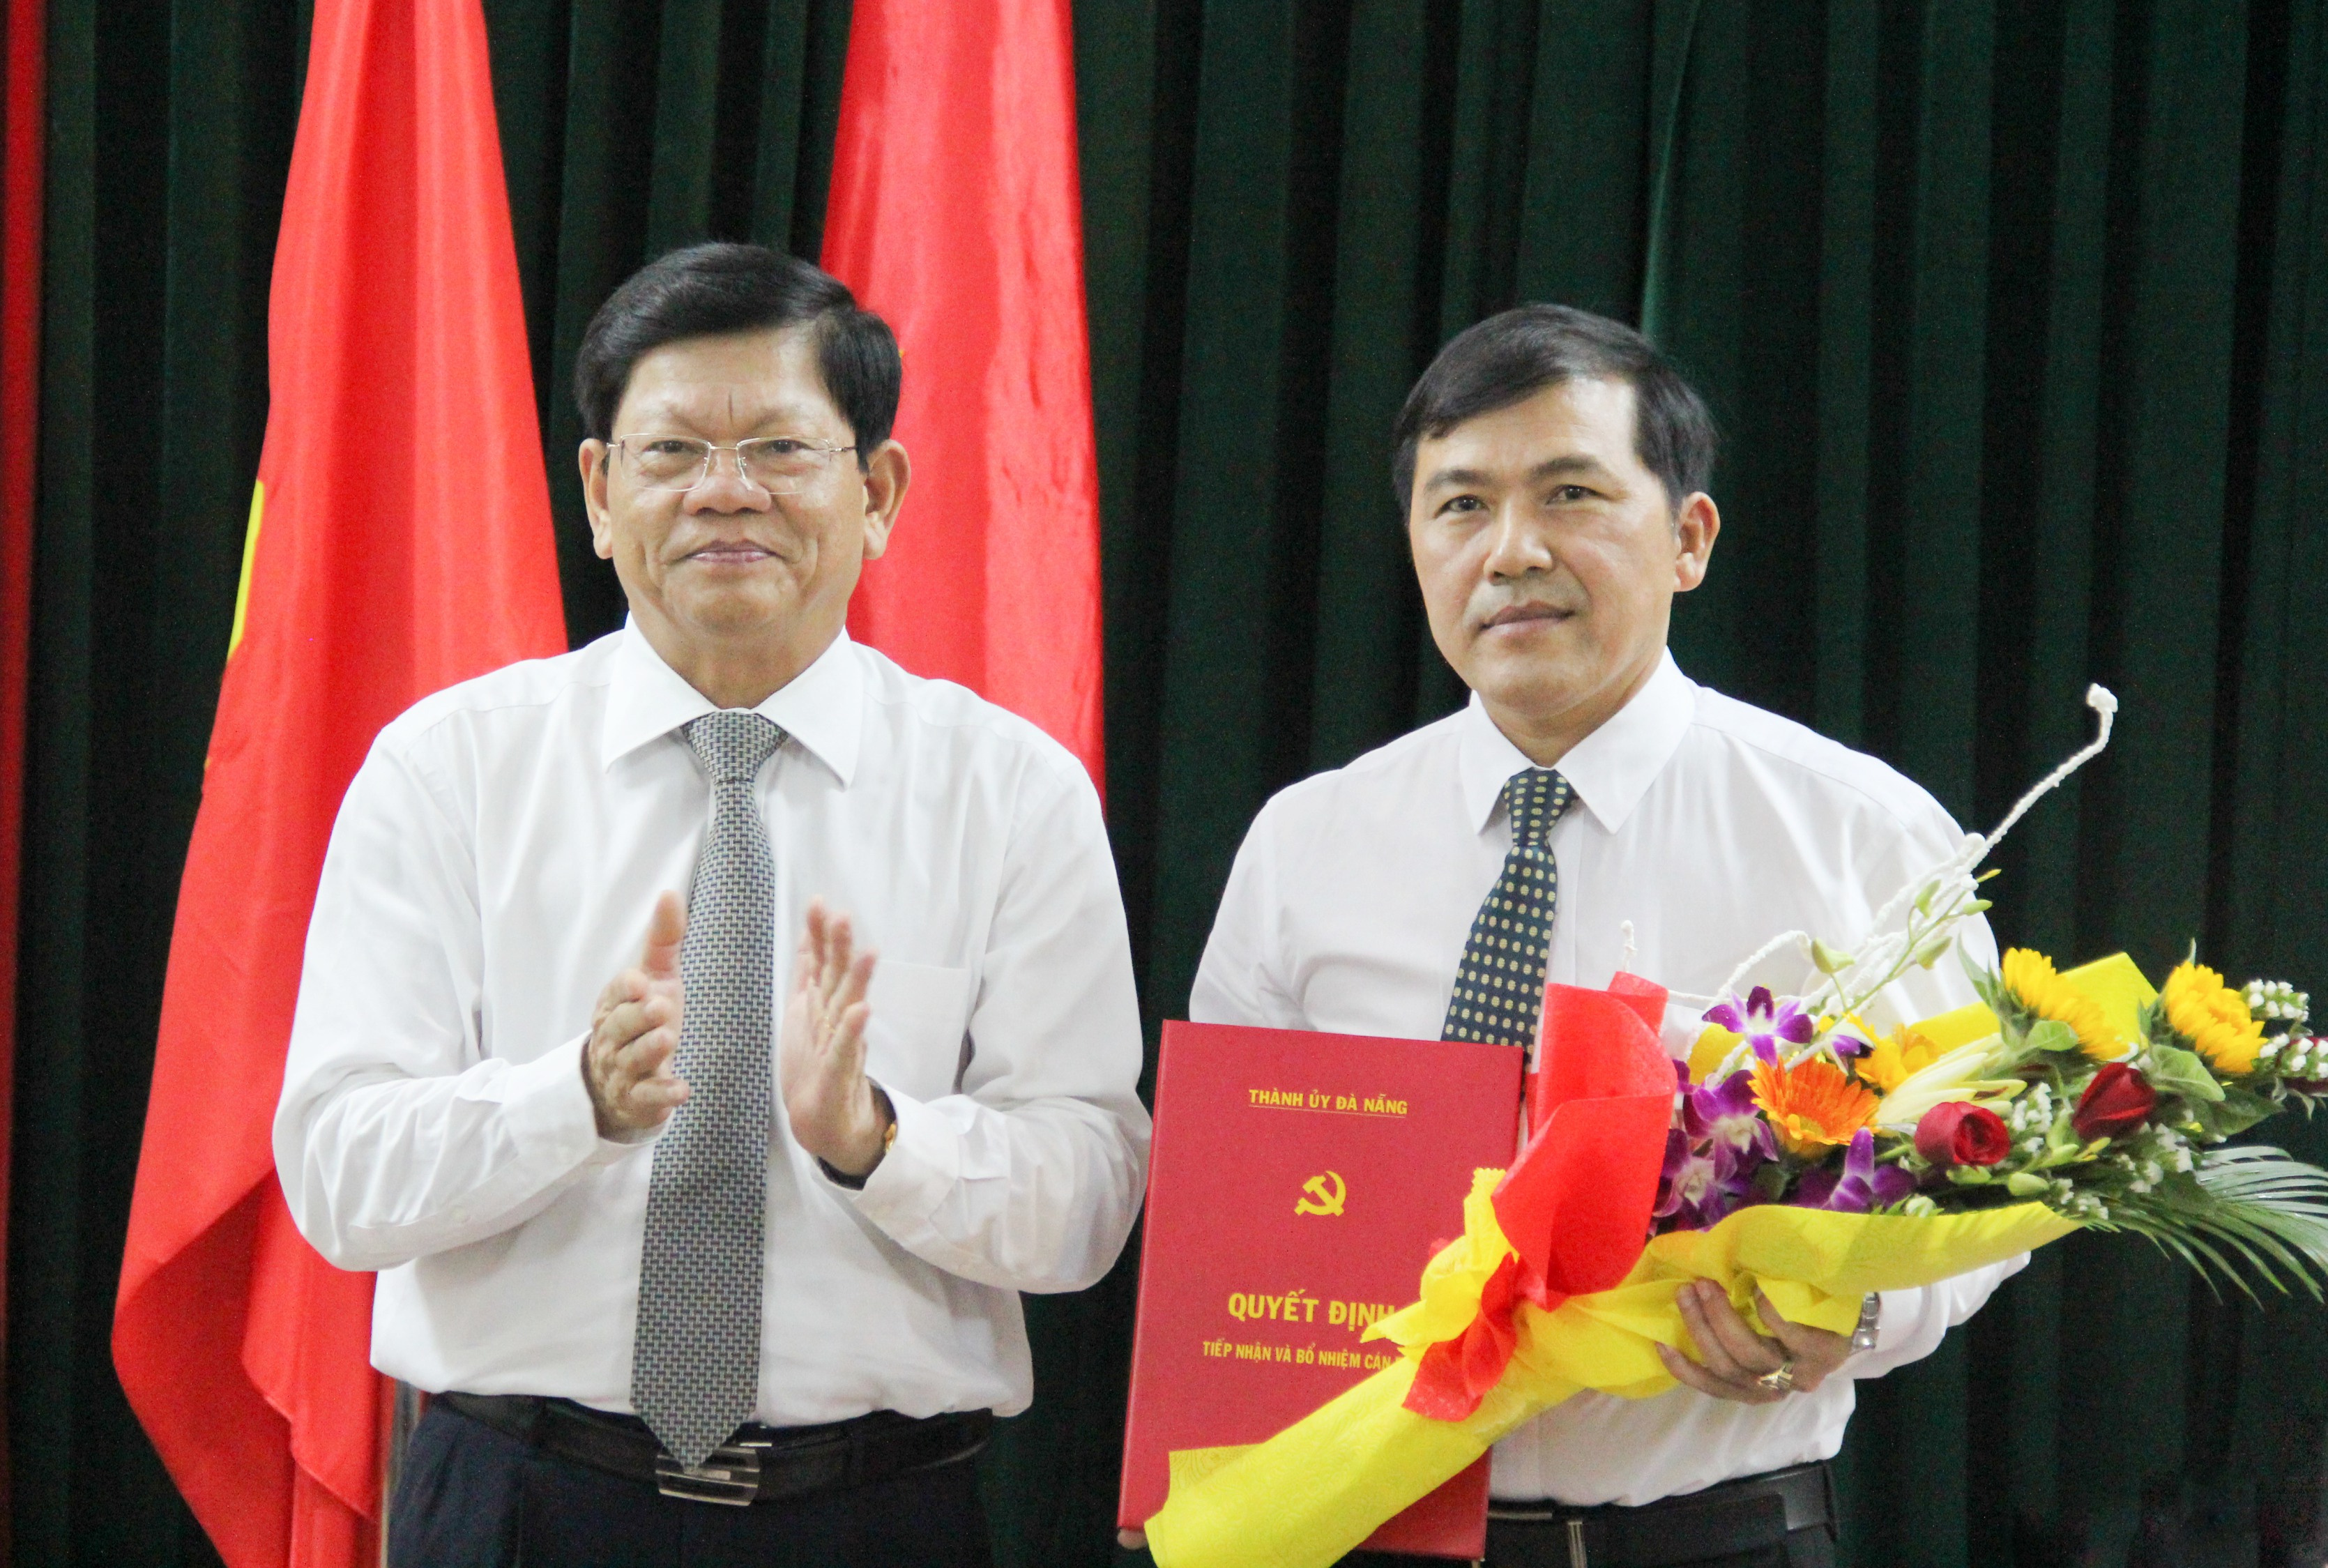 Ông Nguyễn Đức Nam giữ chức Phó Tổng Biên tập Báo Đà Nẵng - Đà Nẵng Online